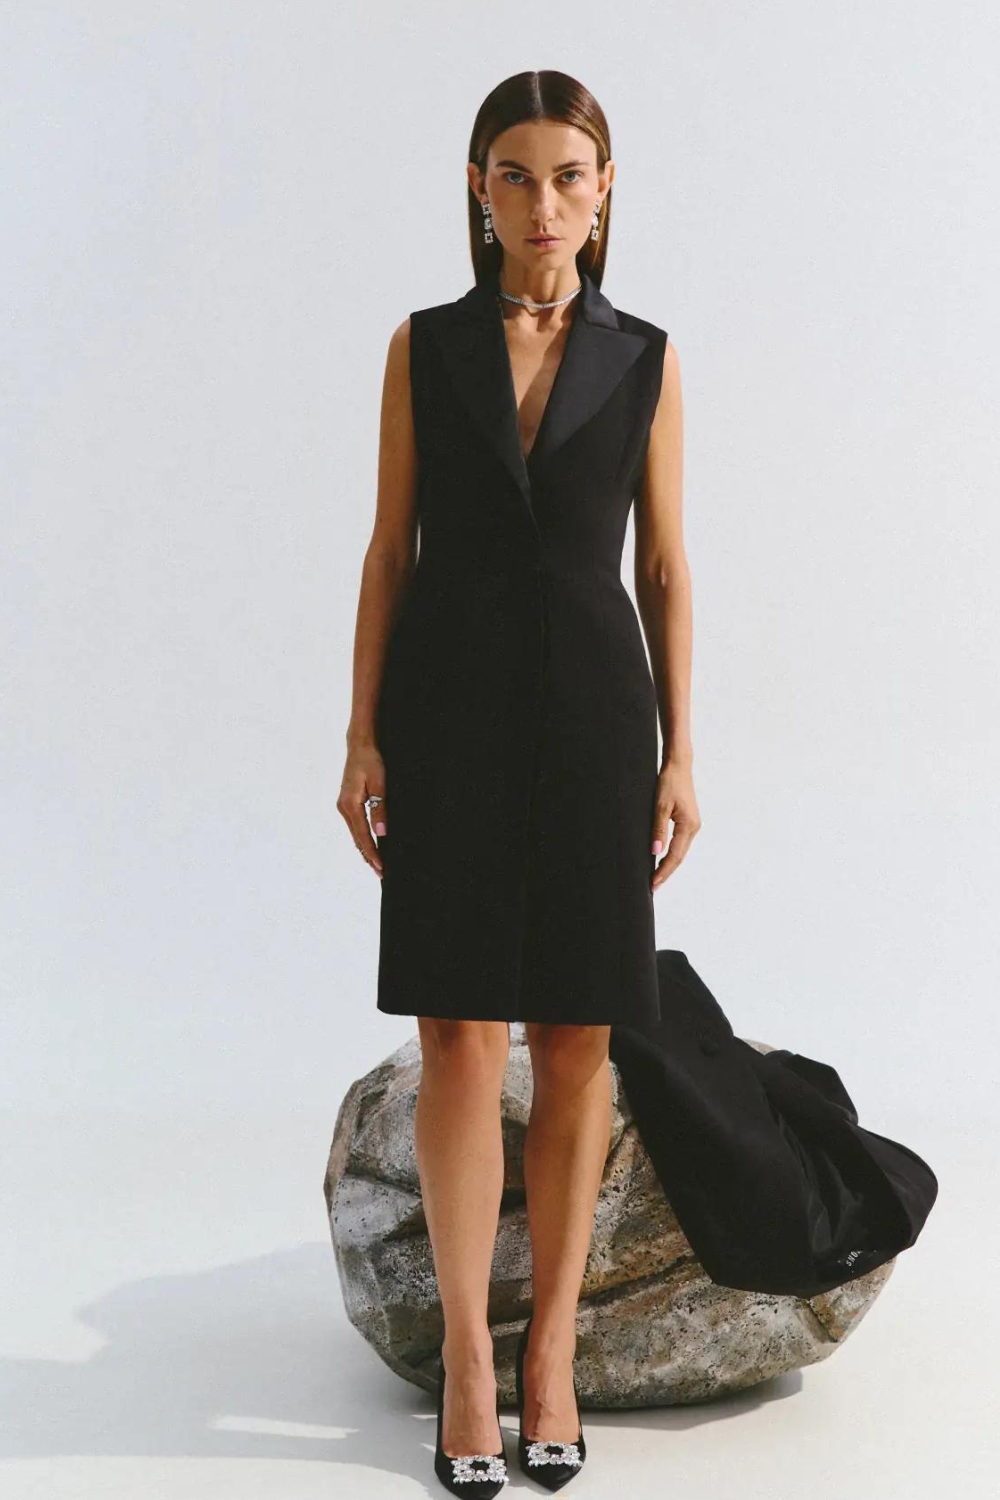 Класична сукня з атласним коміром, чорний колір (Vivons)